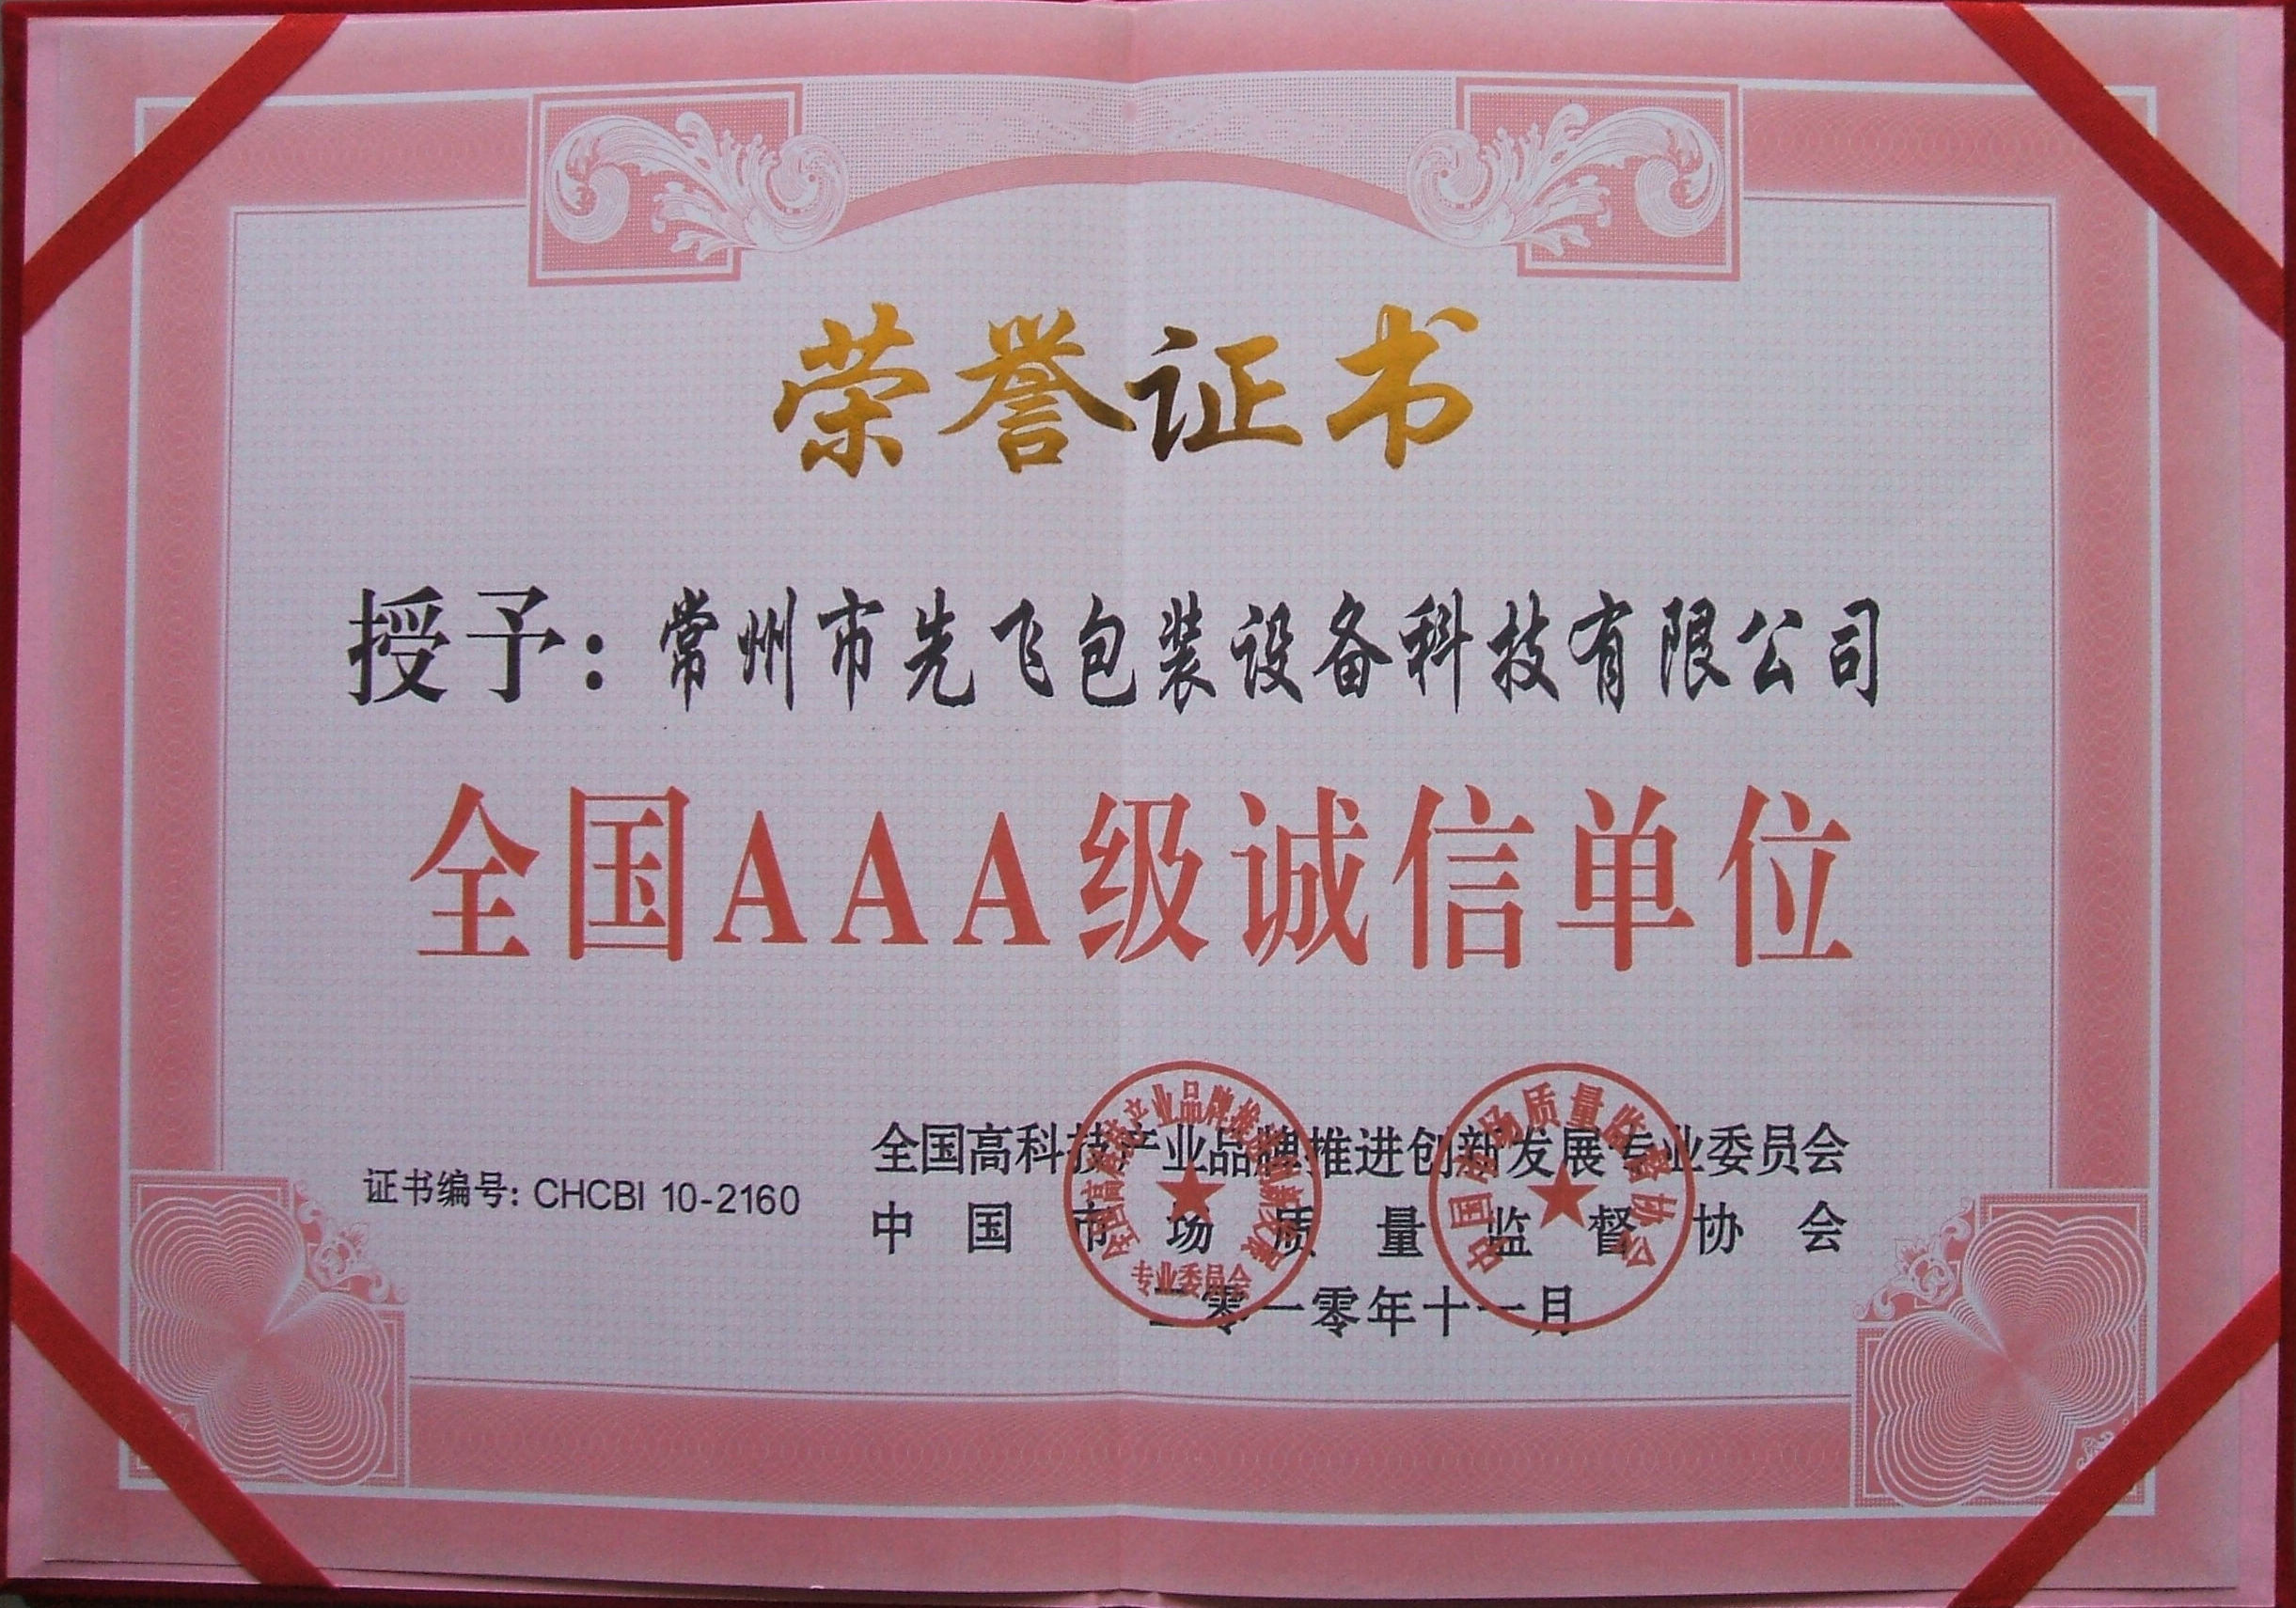 Changzhou Xianfei Packing Equipment Technology Co., Ltd. Certifications